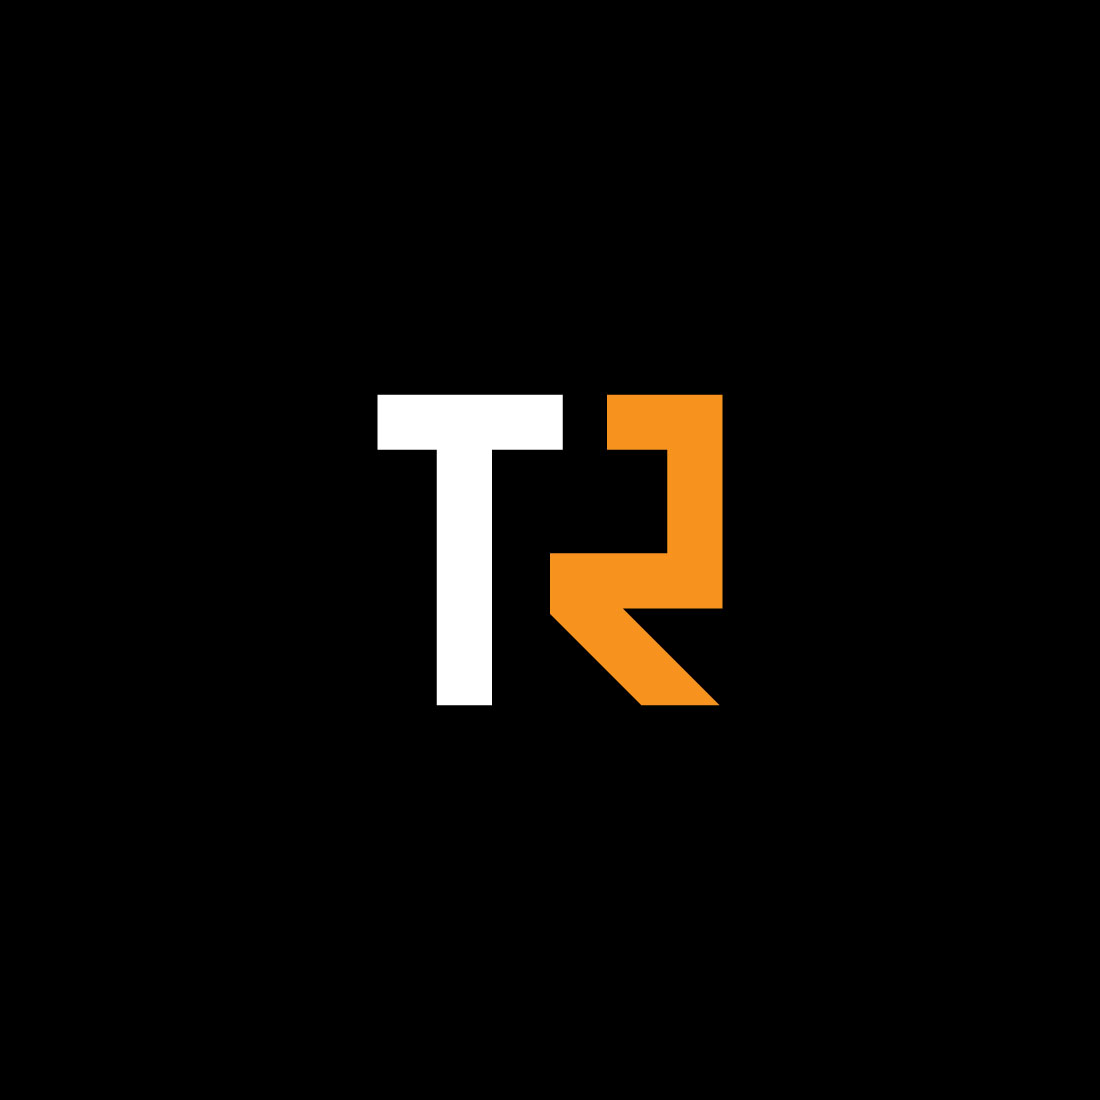 Tt Logo Cliparts, Stock Vector and Royalty Free Tt Logo Illustrations